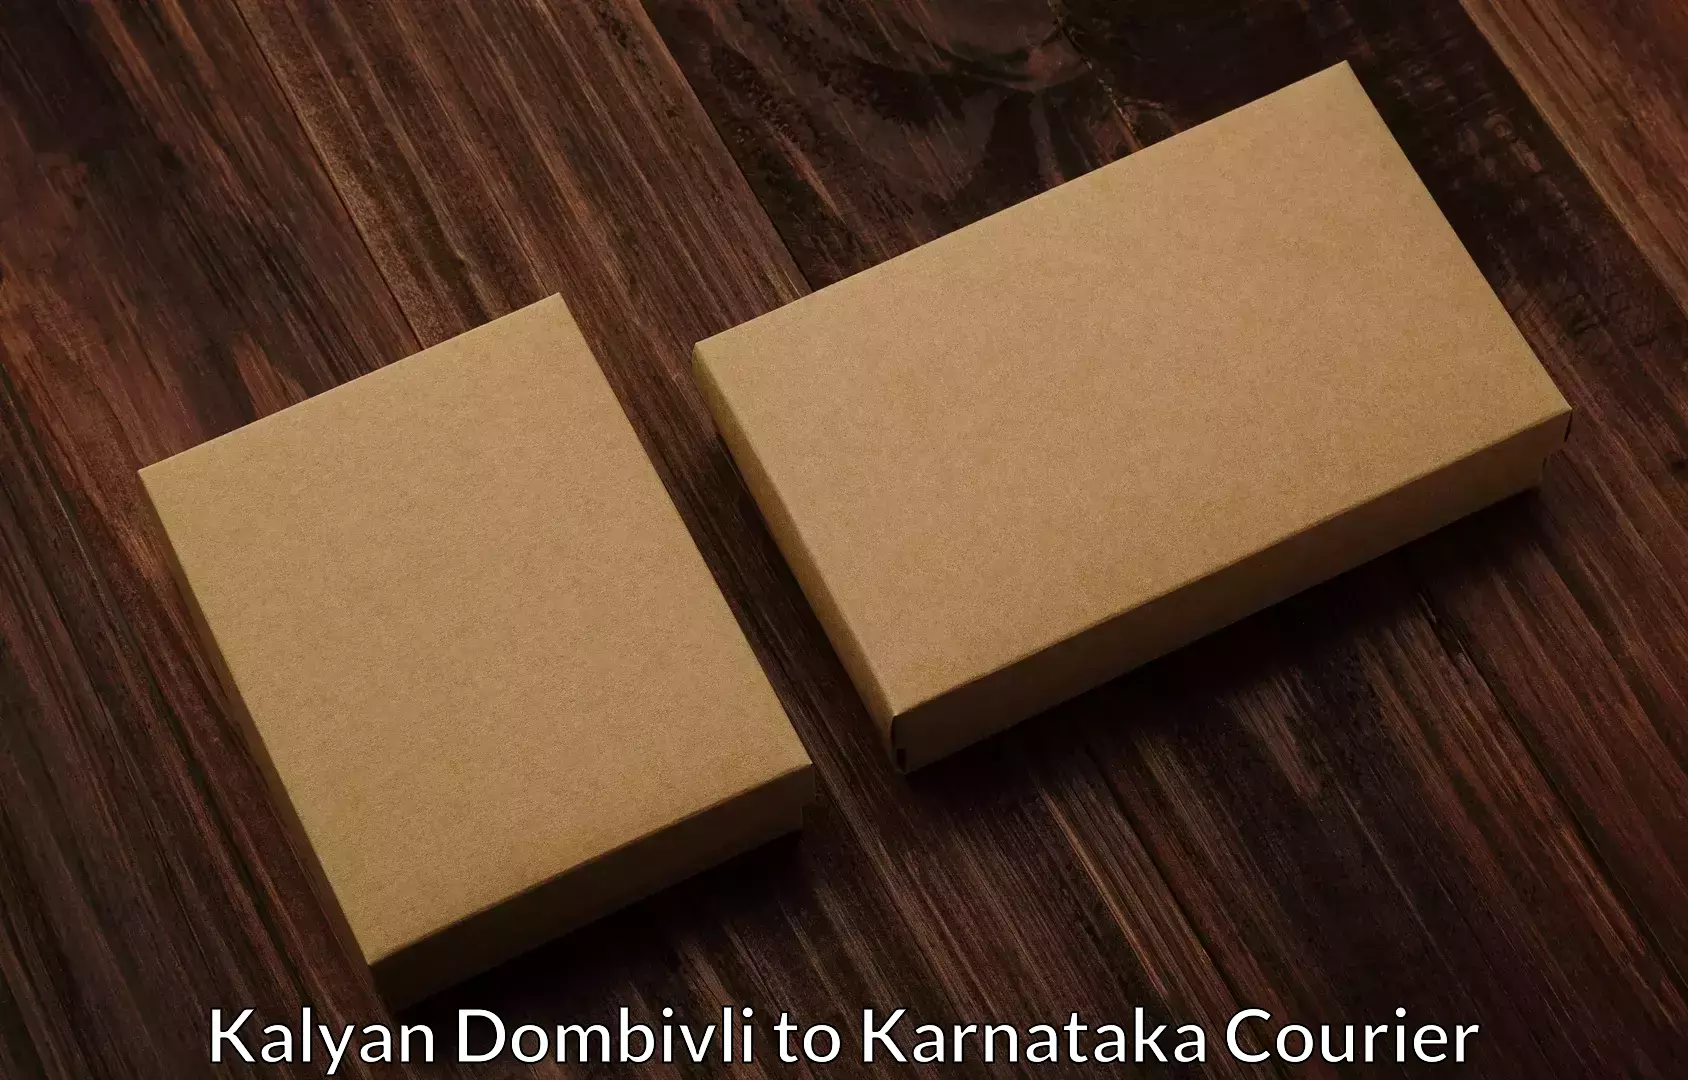 Furniture moving services Kalyan Dombivli to Karnataka